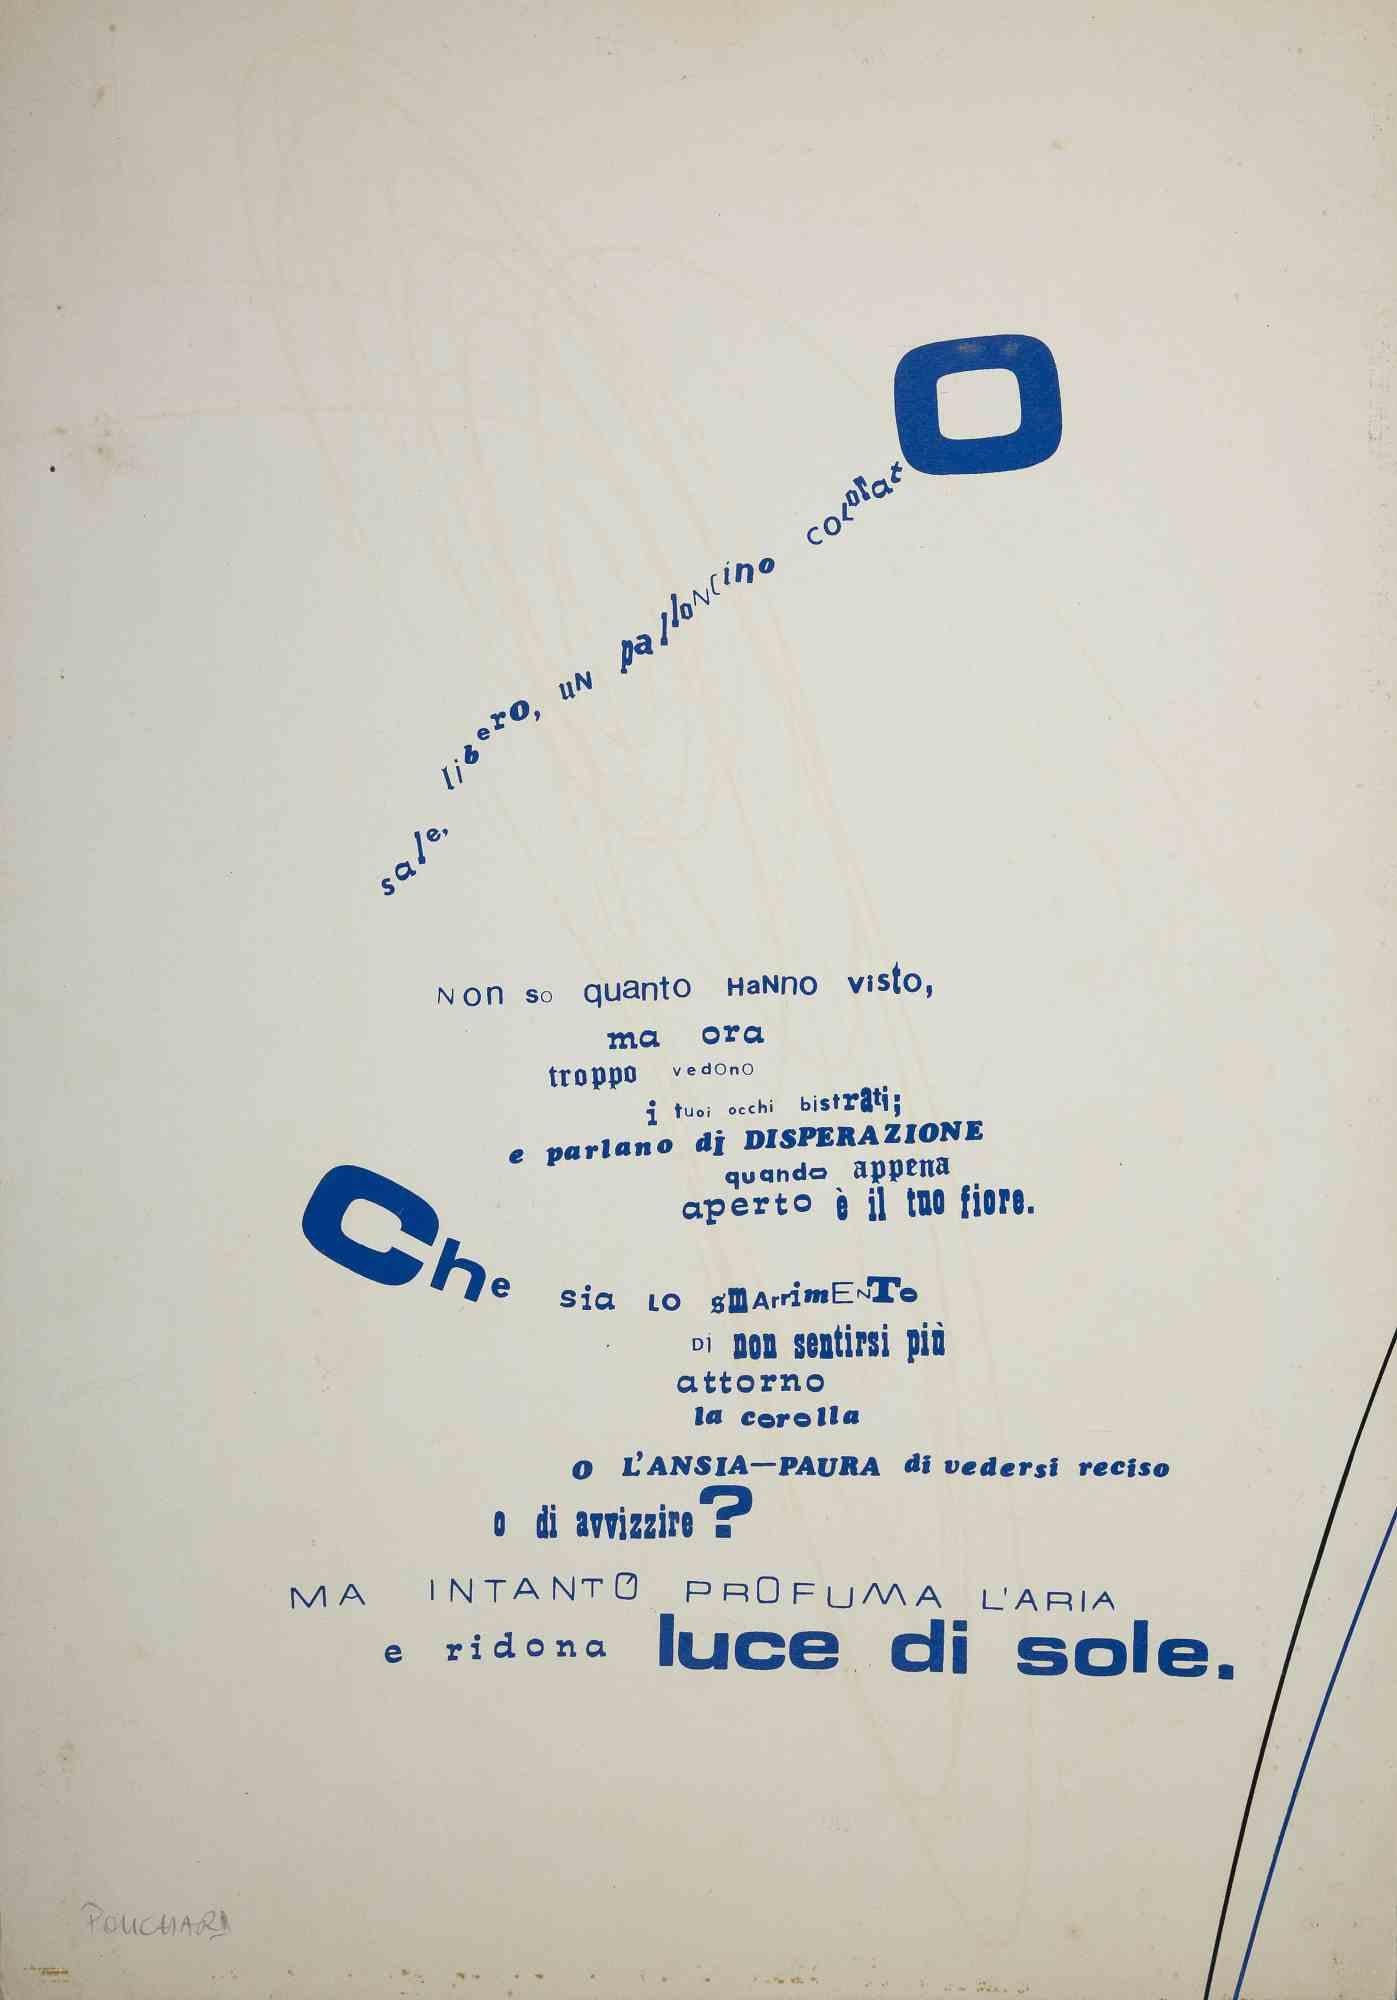 Visual Poem ist ein Original-Siebdruck von Ennio Pouchard aus dem Jahr 1970.

Guter Zustand auf einem weißen Karton.

Unterschrift mit Bleistift.

Ennio Pouchard ist Maler, Fotograf und Designer aus Treviso, geboren 1952. Seine Lehrzeit dauerte